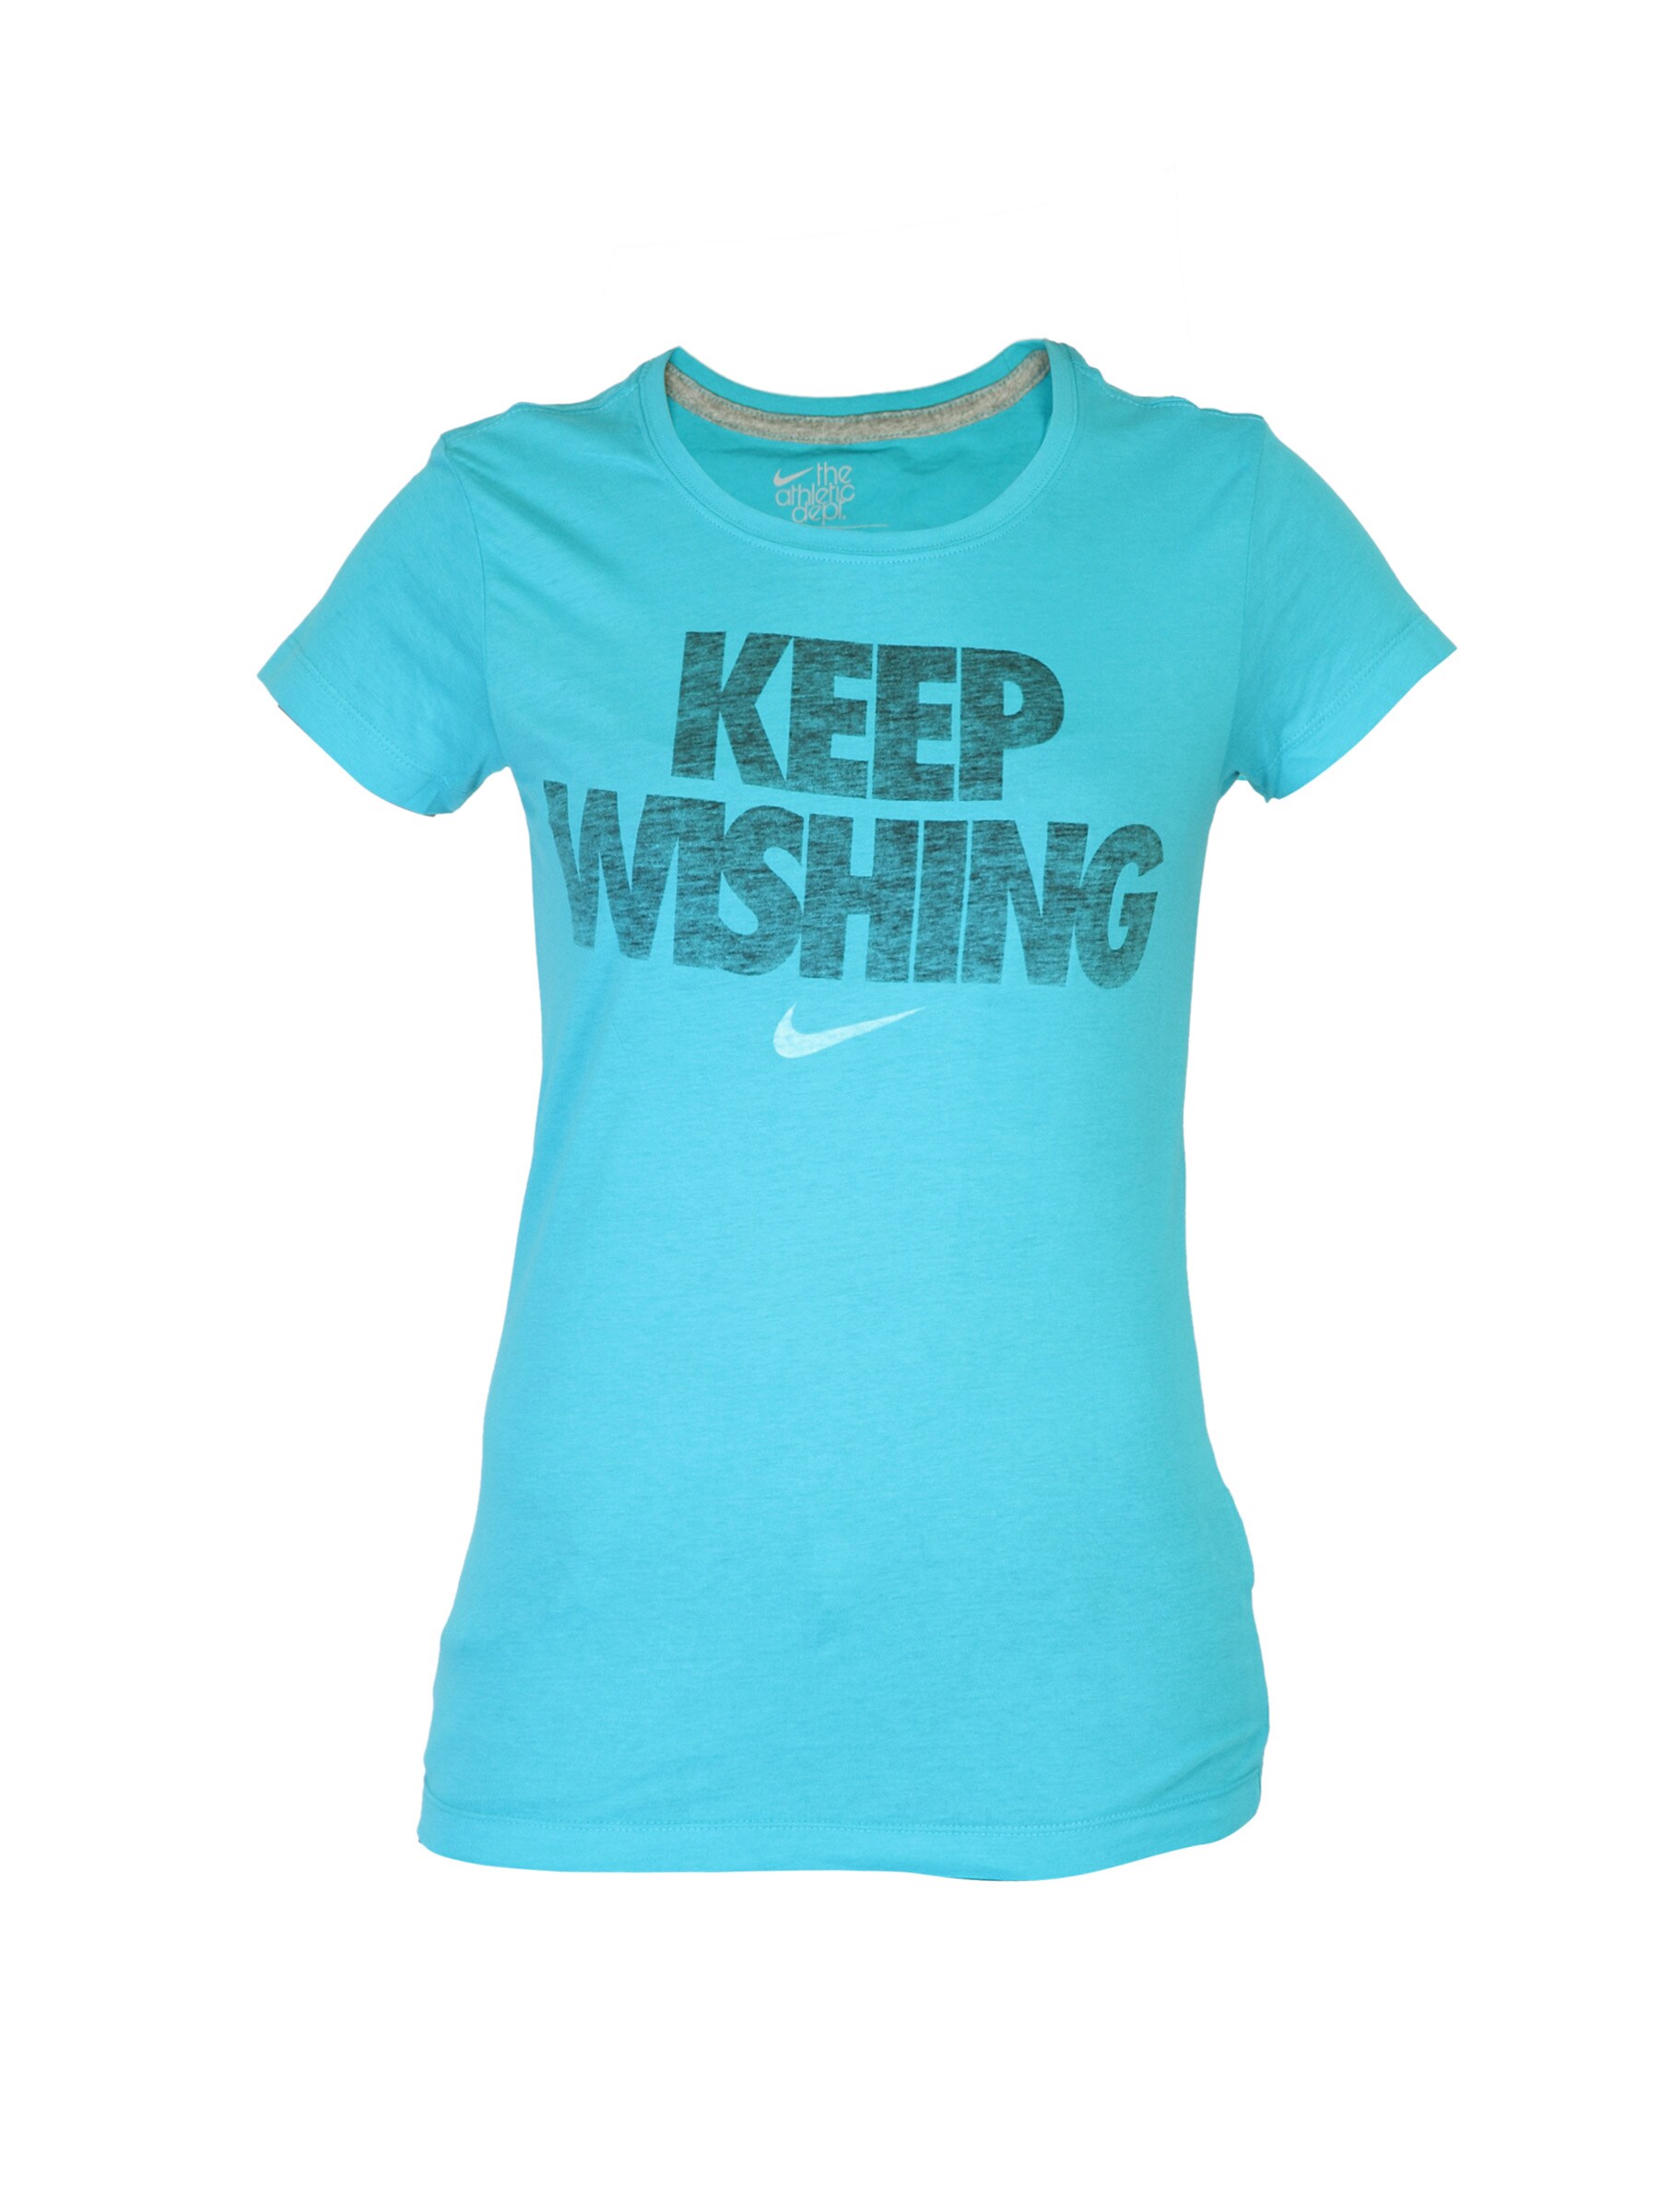 Nike Women You Wish Blue T-shirt